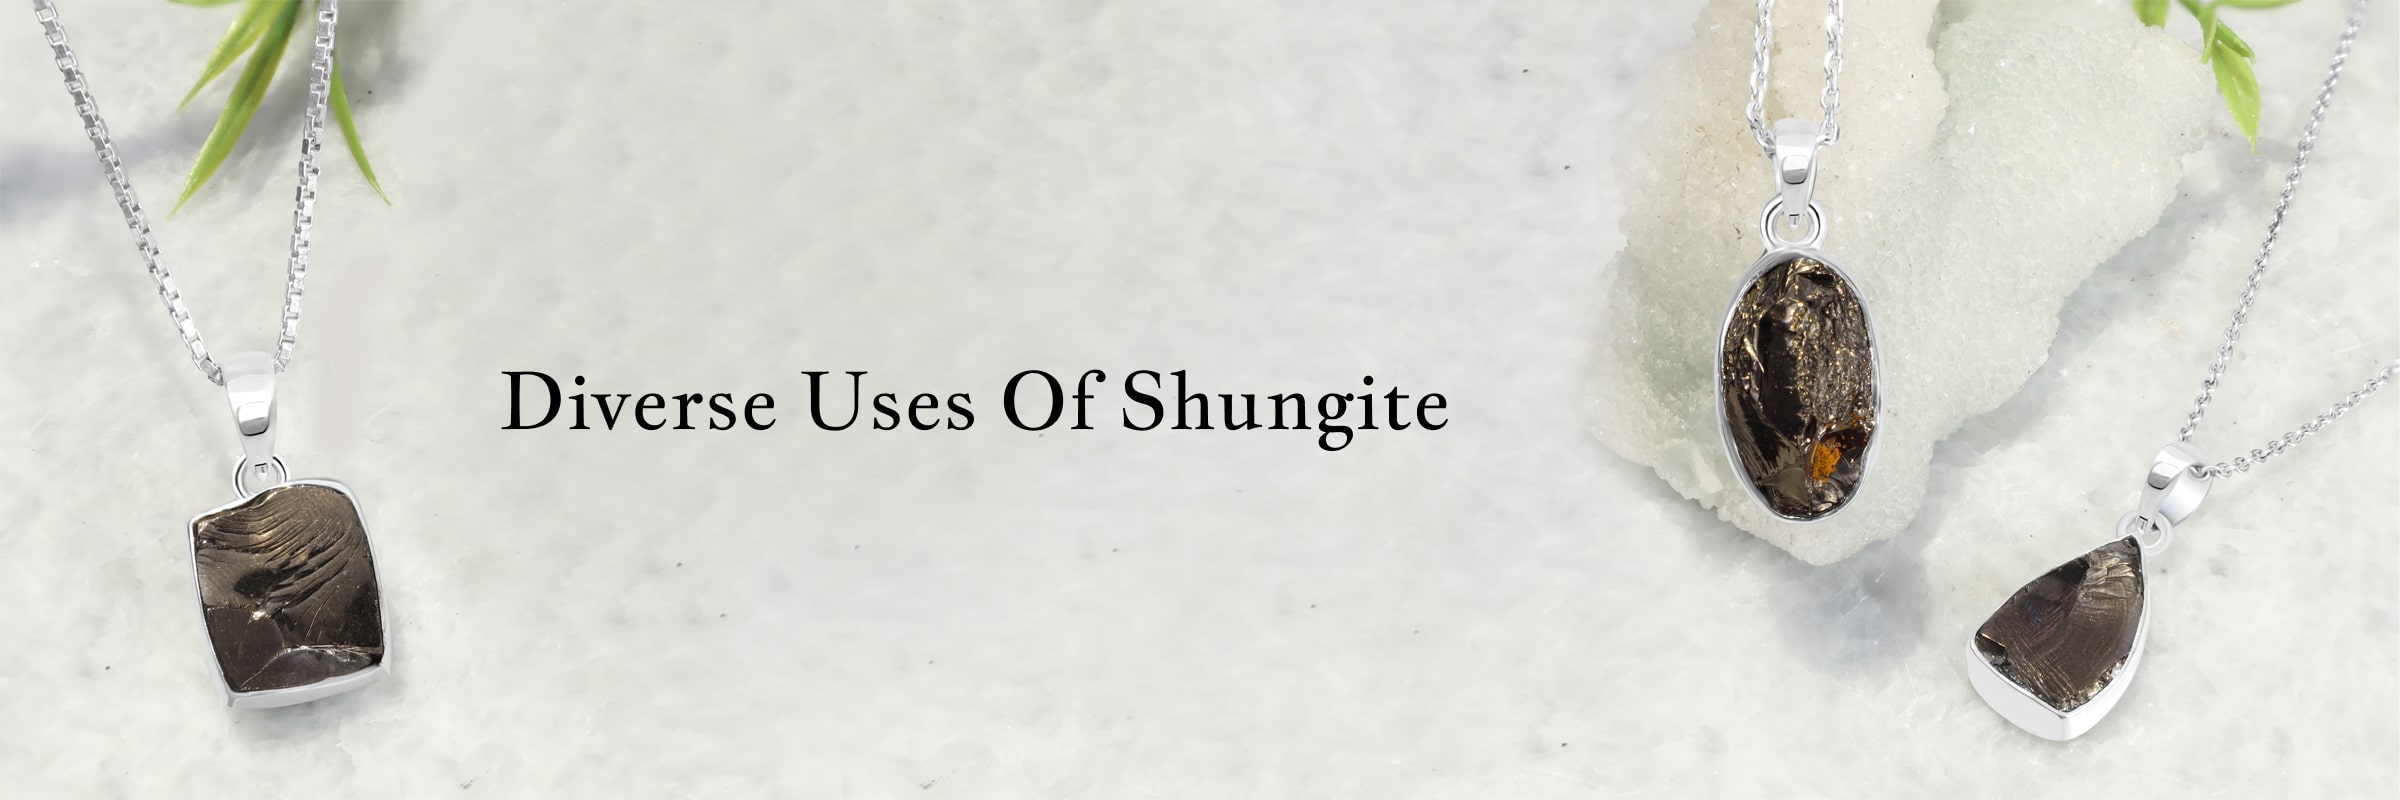 Uses of shungite